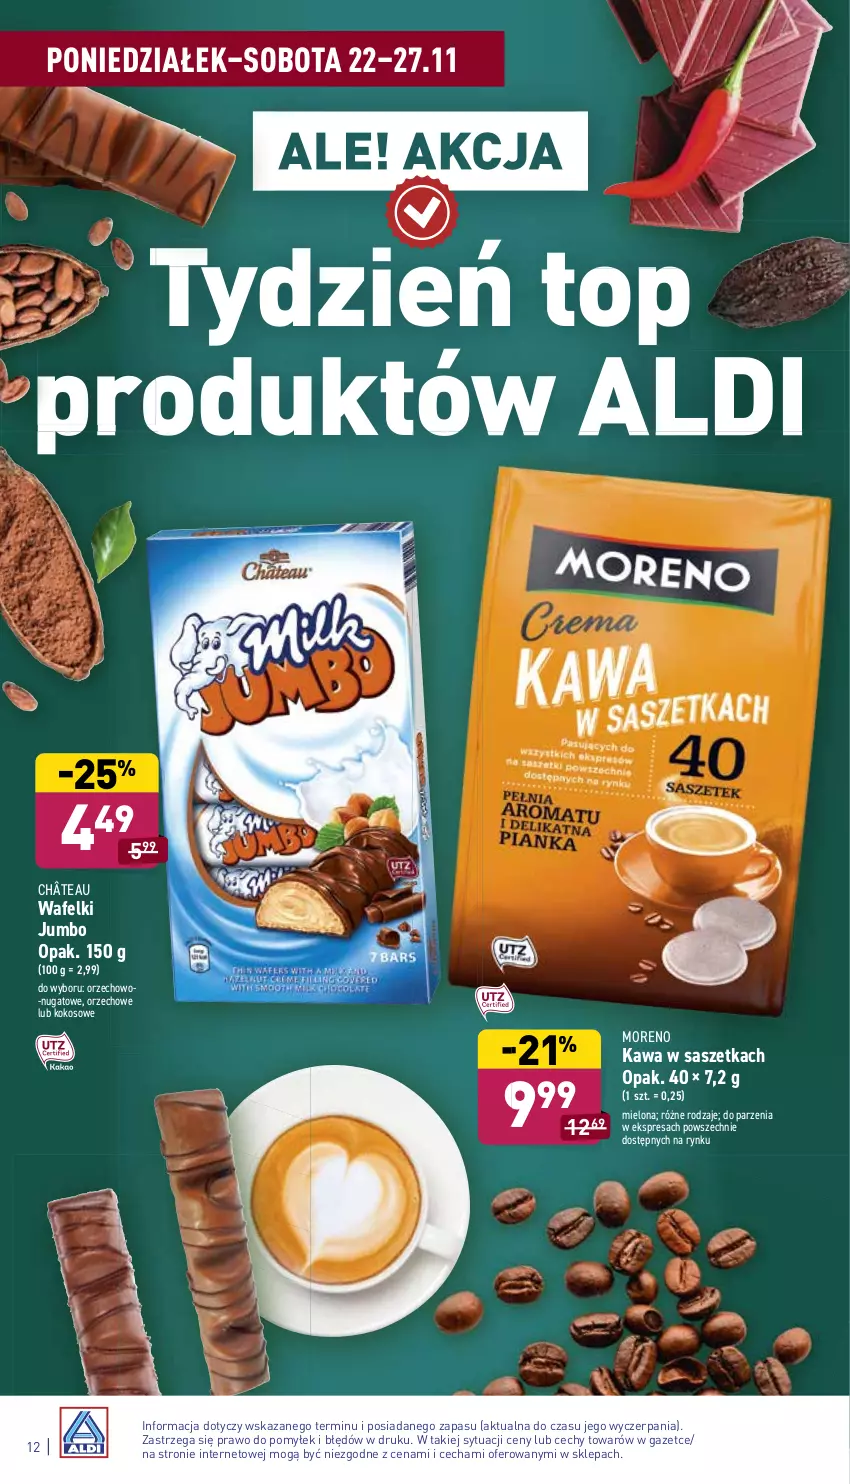 Gazetka promocyjna Aldi - ważna 22.11 do 27.11.2021 - strona 12 - produkty: Kawa, Kokos, Top